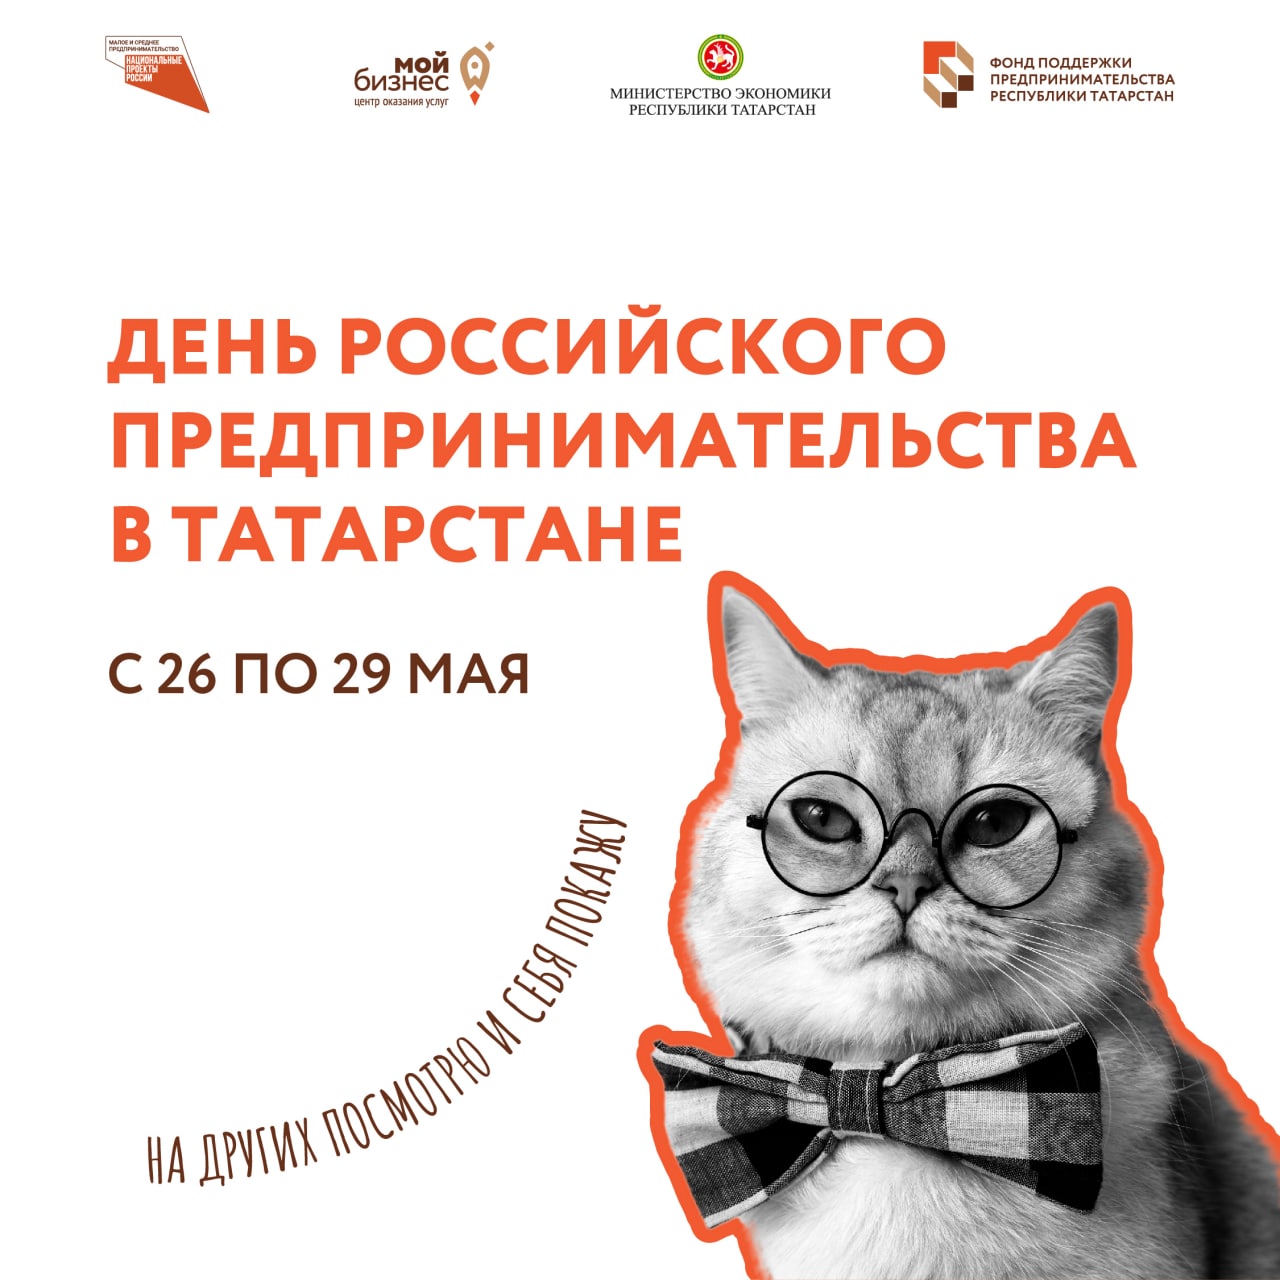 День российского предпринимательства: ярмарка предпринимателей и самозанятых, встреча с Президентом Татарстана